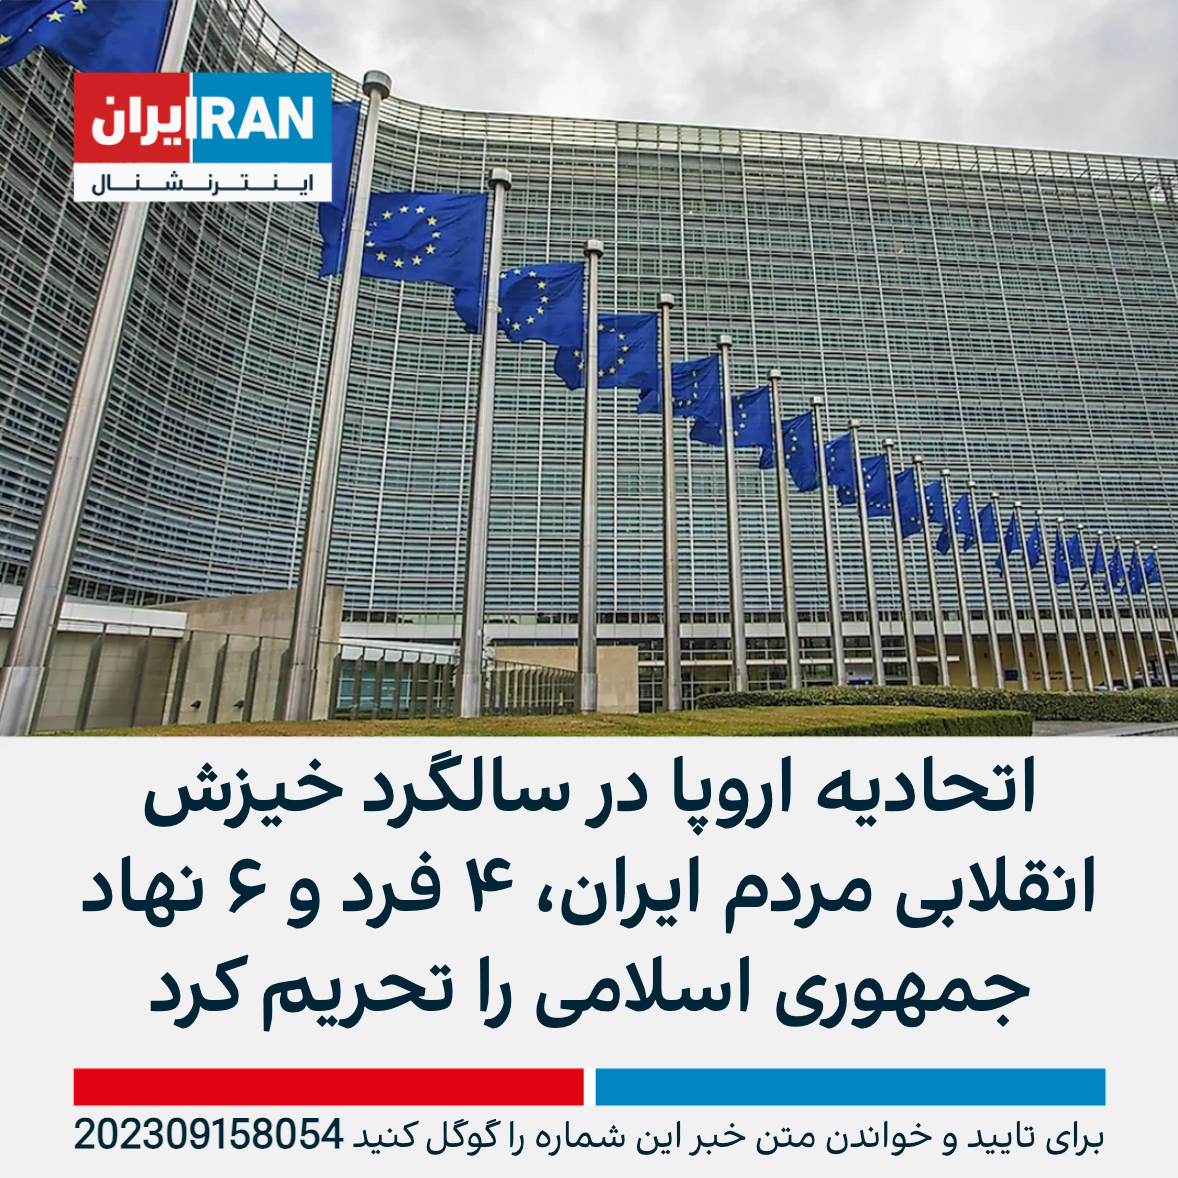 اتحادیه اروپا در سالگرد خیزش انقلابی مردم ایران، ۴ فرد و ۶ نهاد جمهوری